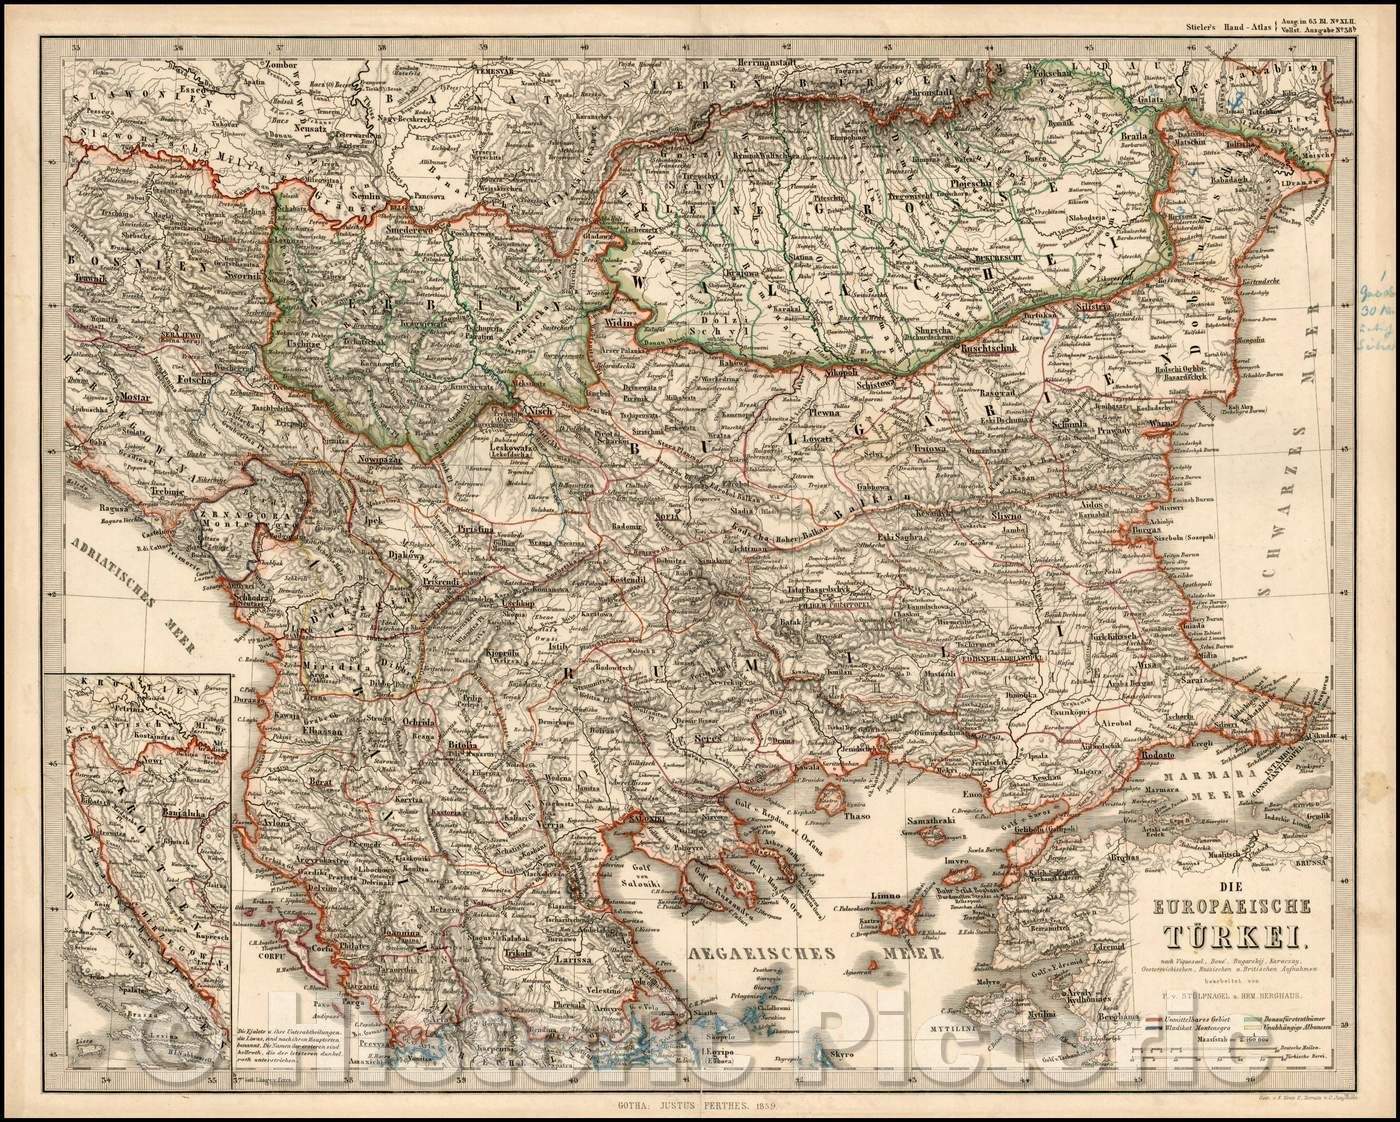 Historic Map - Die Europaeische Turkei/European parts of Turkey and the Balkans, including Bulgaria, Serbia, Romania, Albania, Bosnia, Herzogovenia, 1859 - Vintage Wall Art